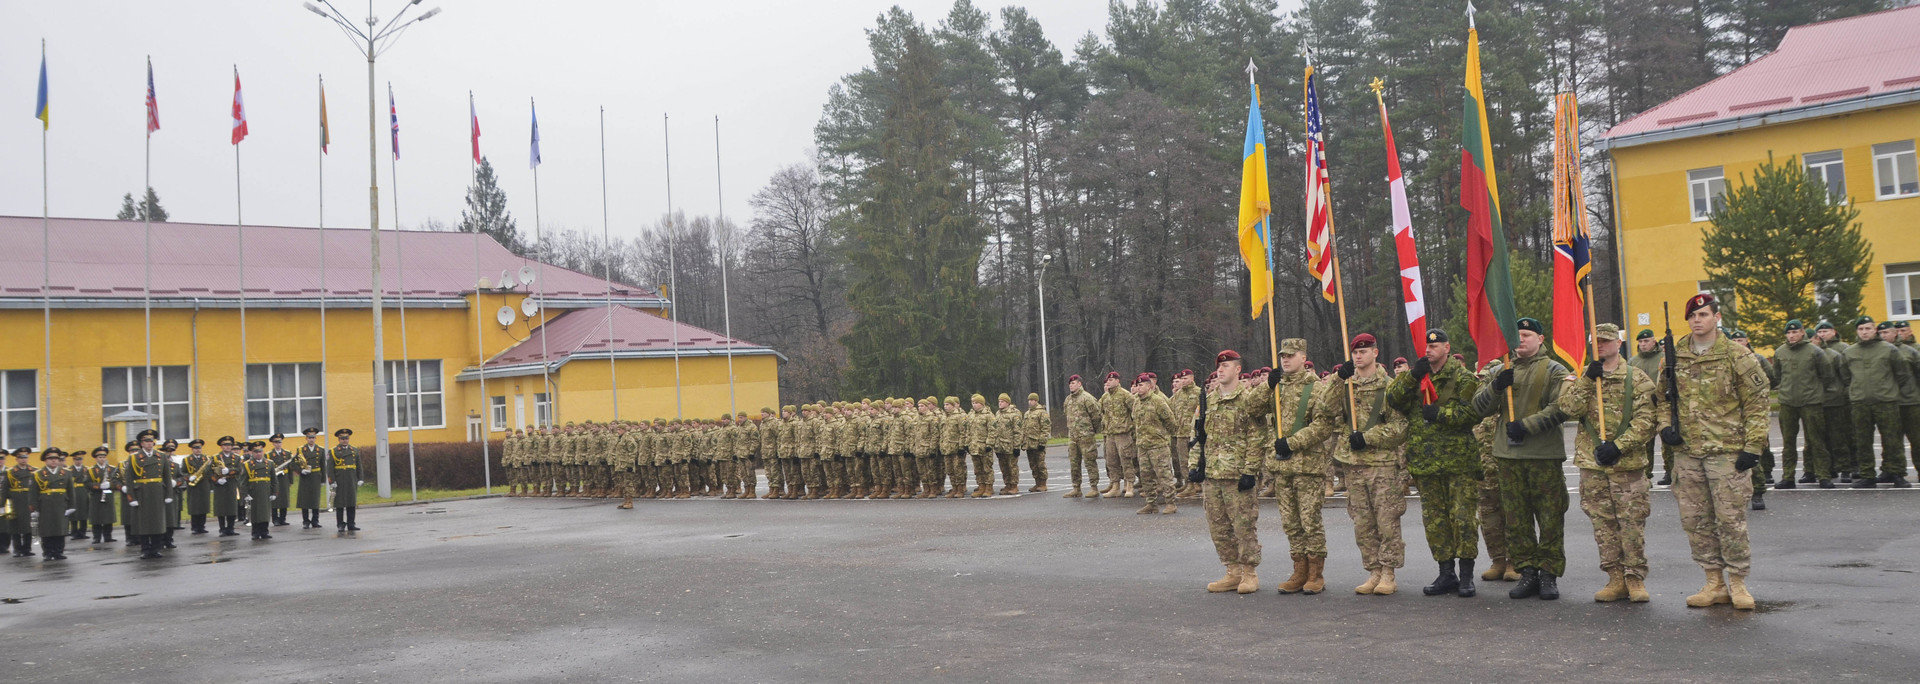 Soldaten der multinationalen Ukraine-Trainingsgruppe